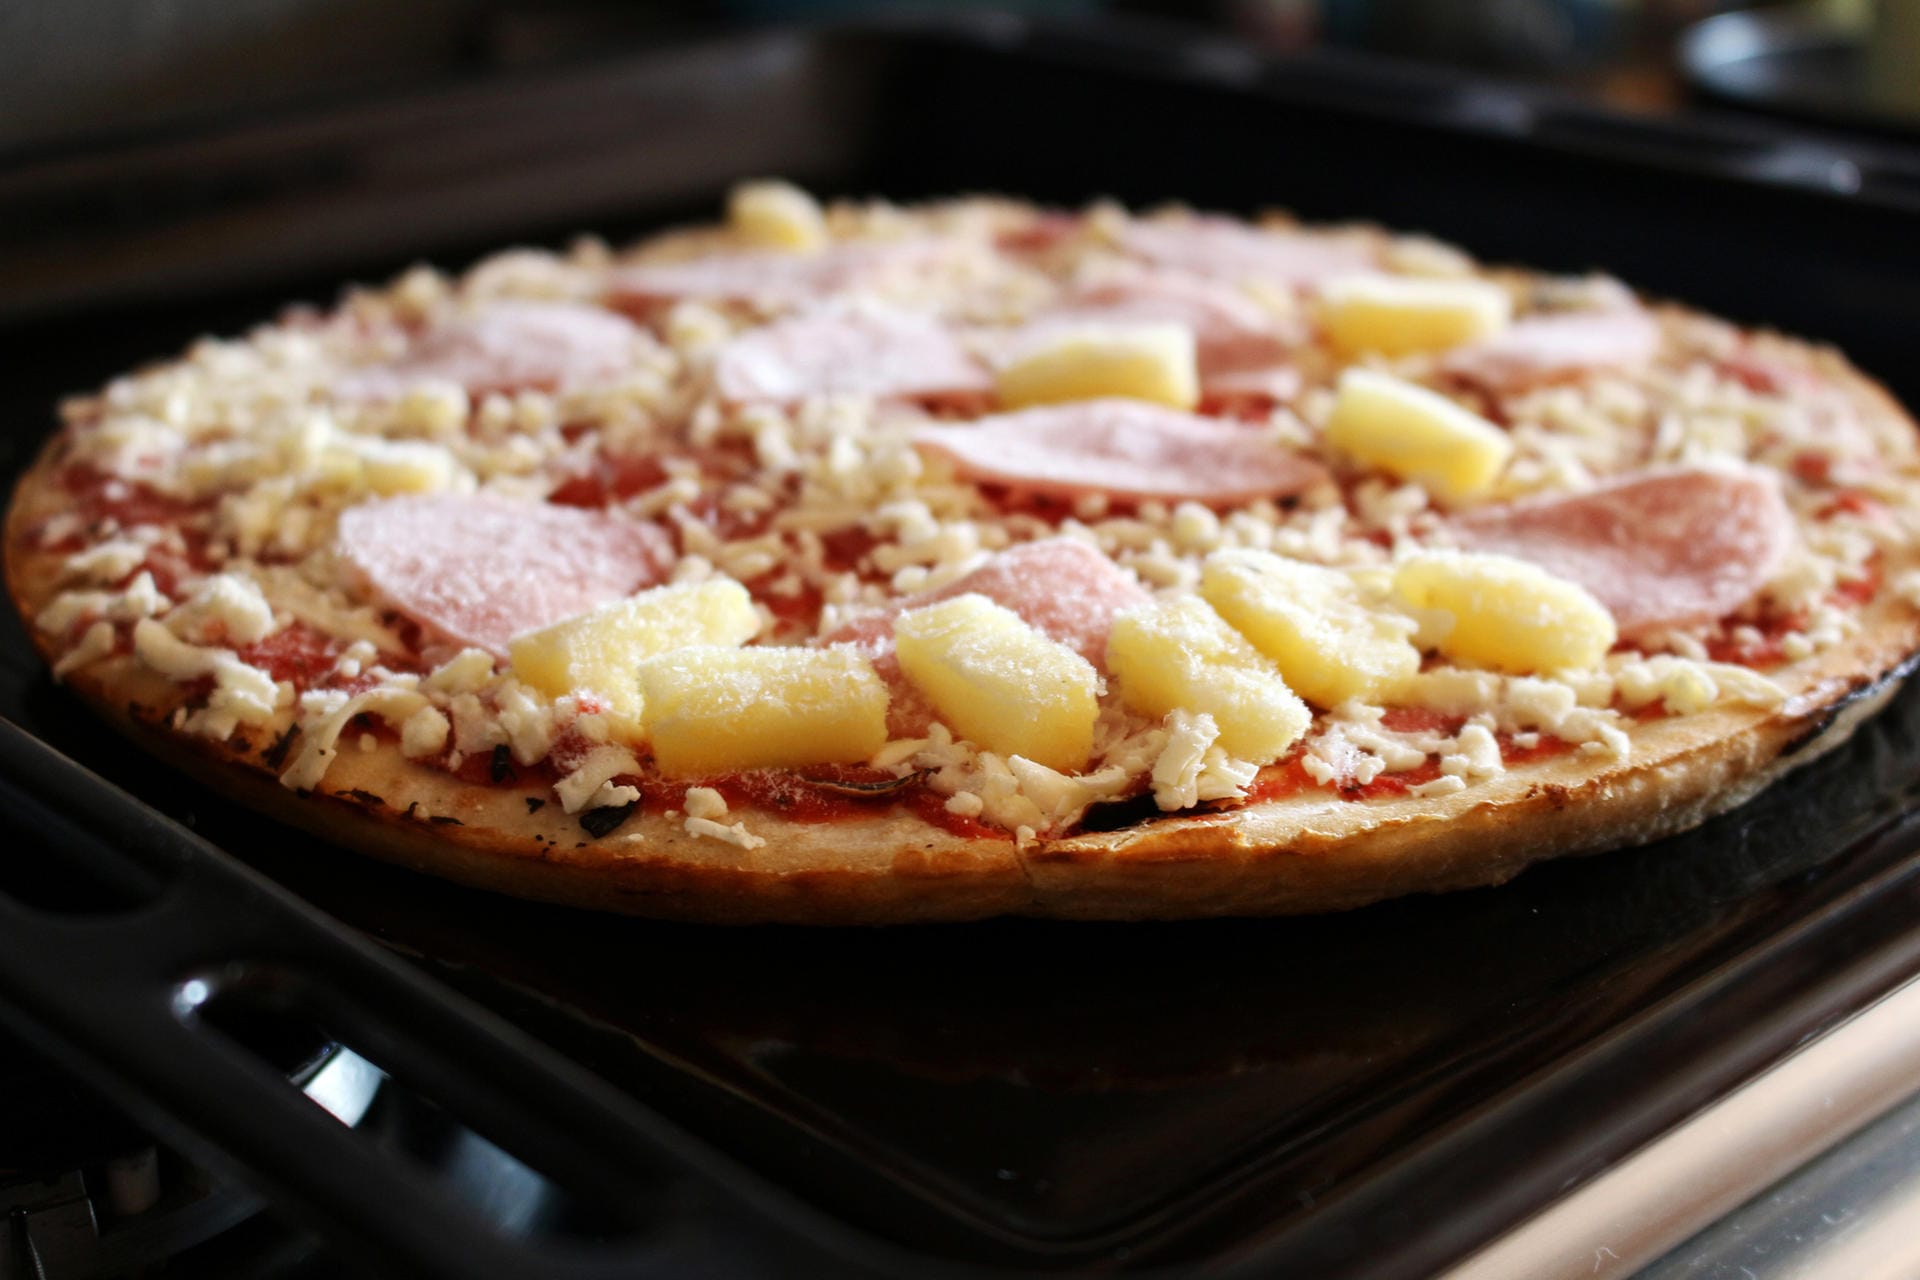 Pizza: Tiefgefrorene Pizza ist in der Regel zwölf Monate haltbar. Danach wird der Rand trocken und im Backofen nicht mehr richtig braun. Außerdem schmeckt der Belag ranzig.